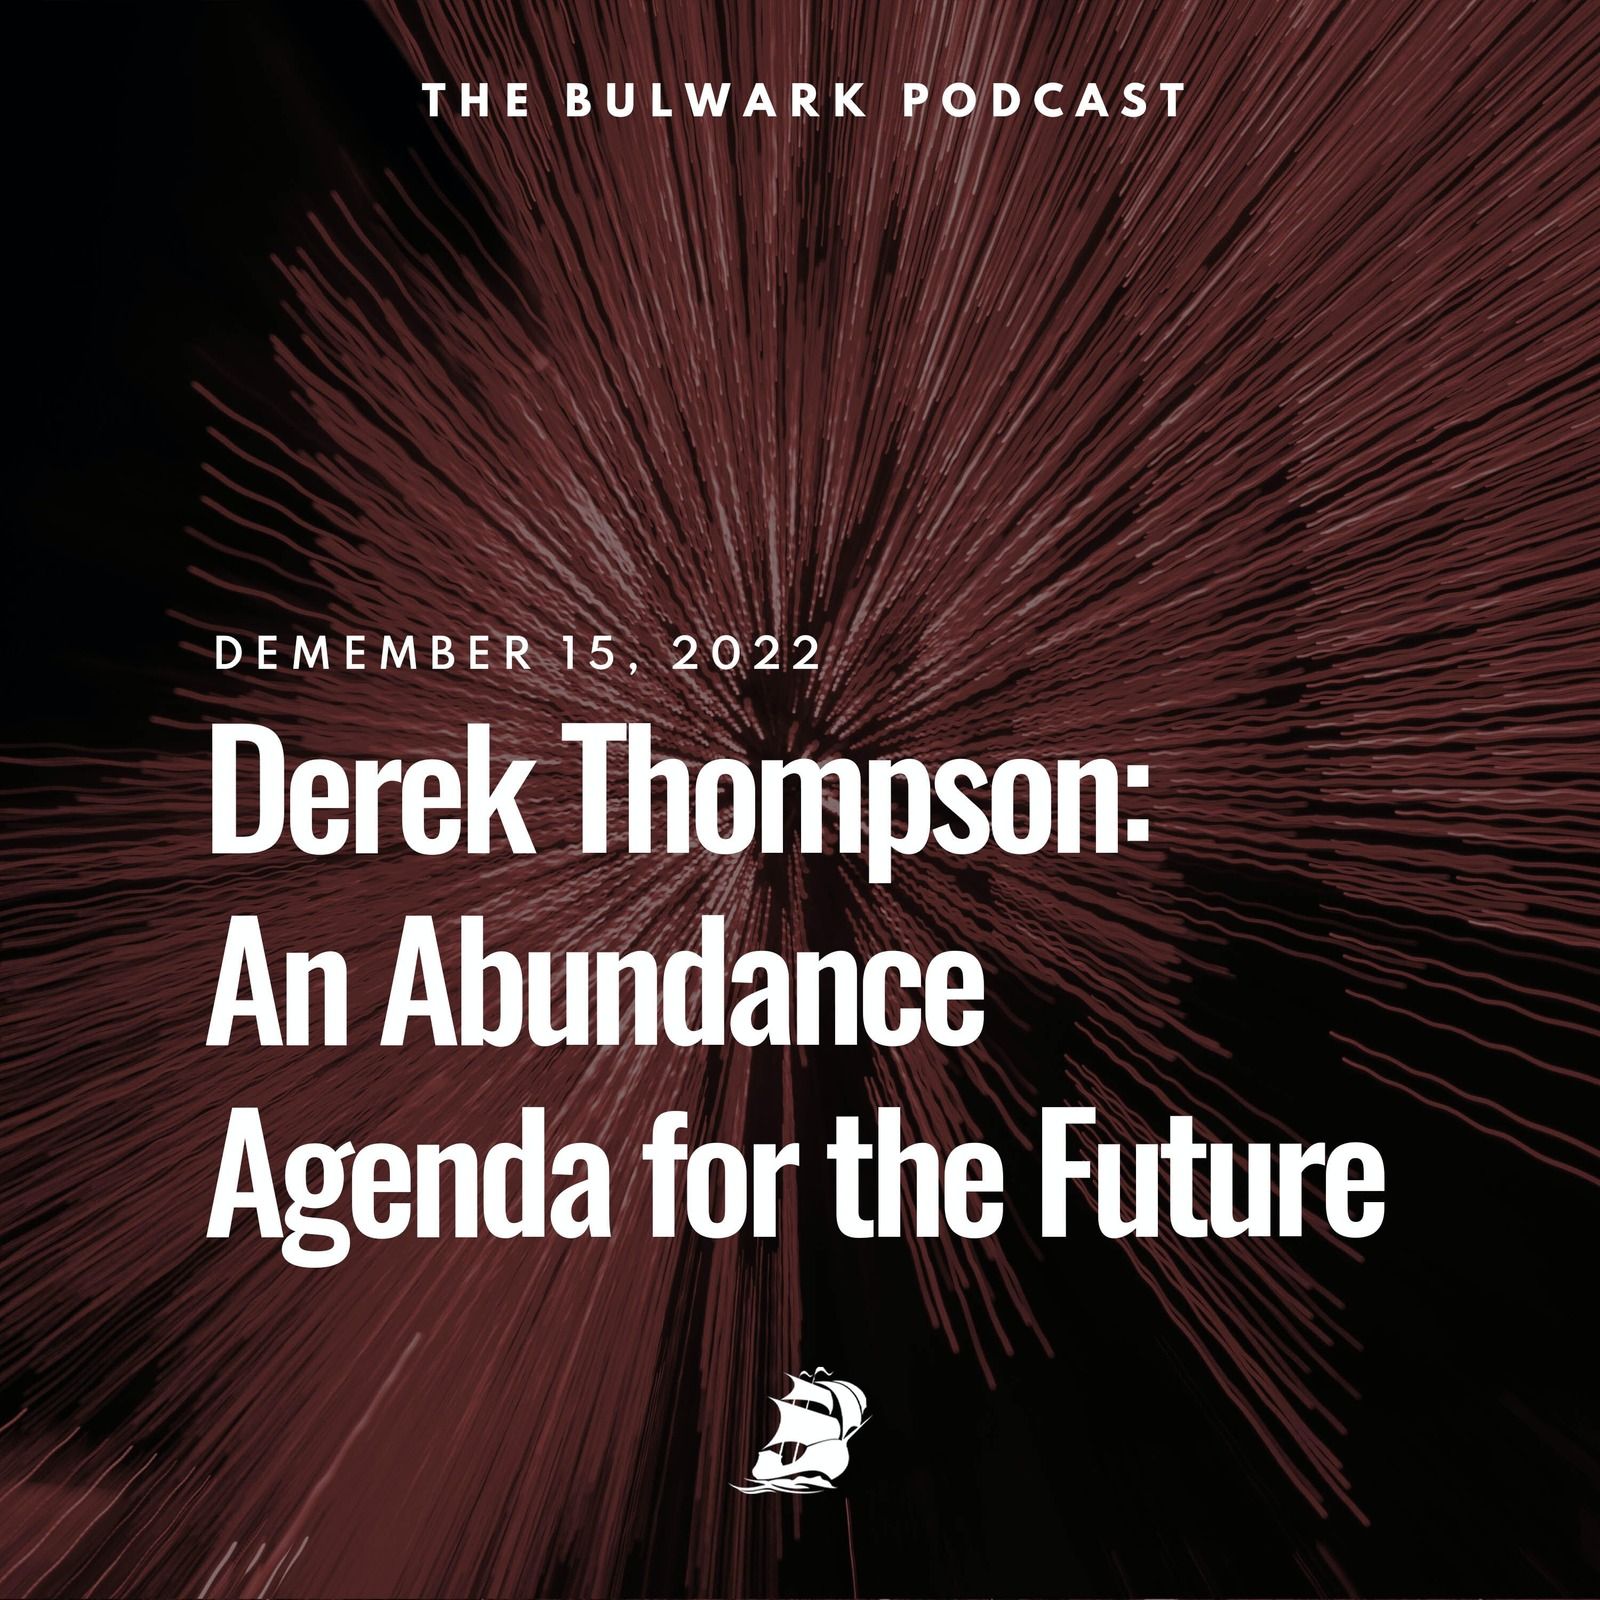 Derek Thompson: An Abundance Agenda for the Future by The Bulwark Podcast